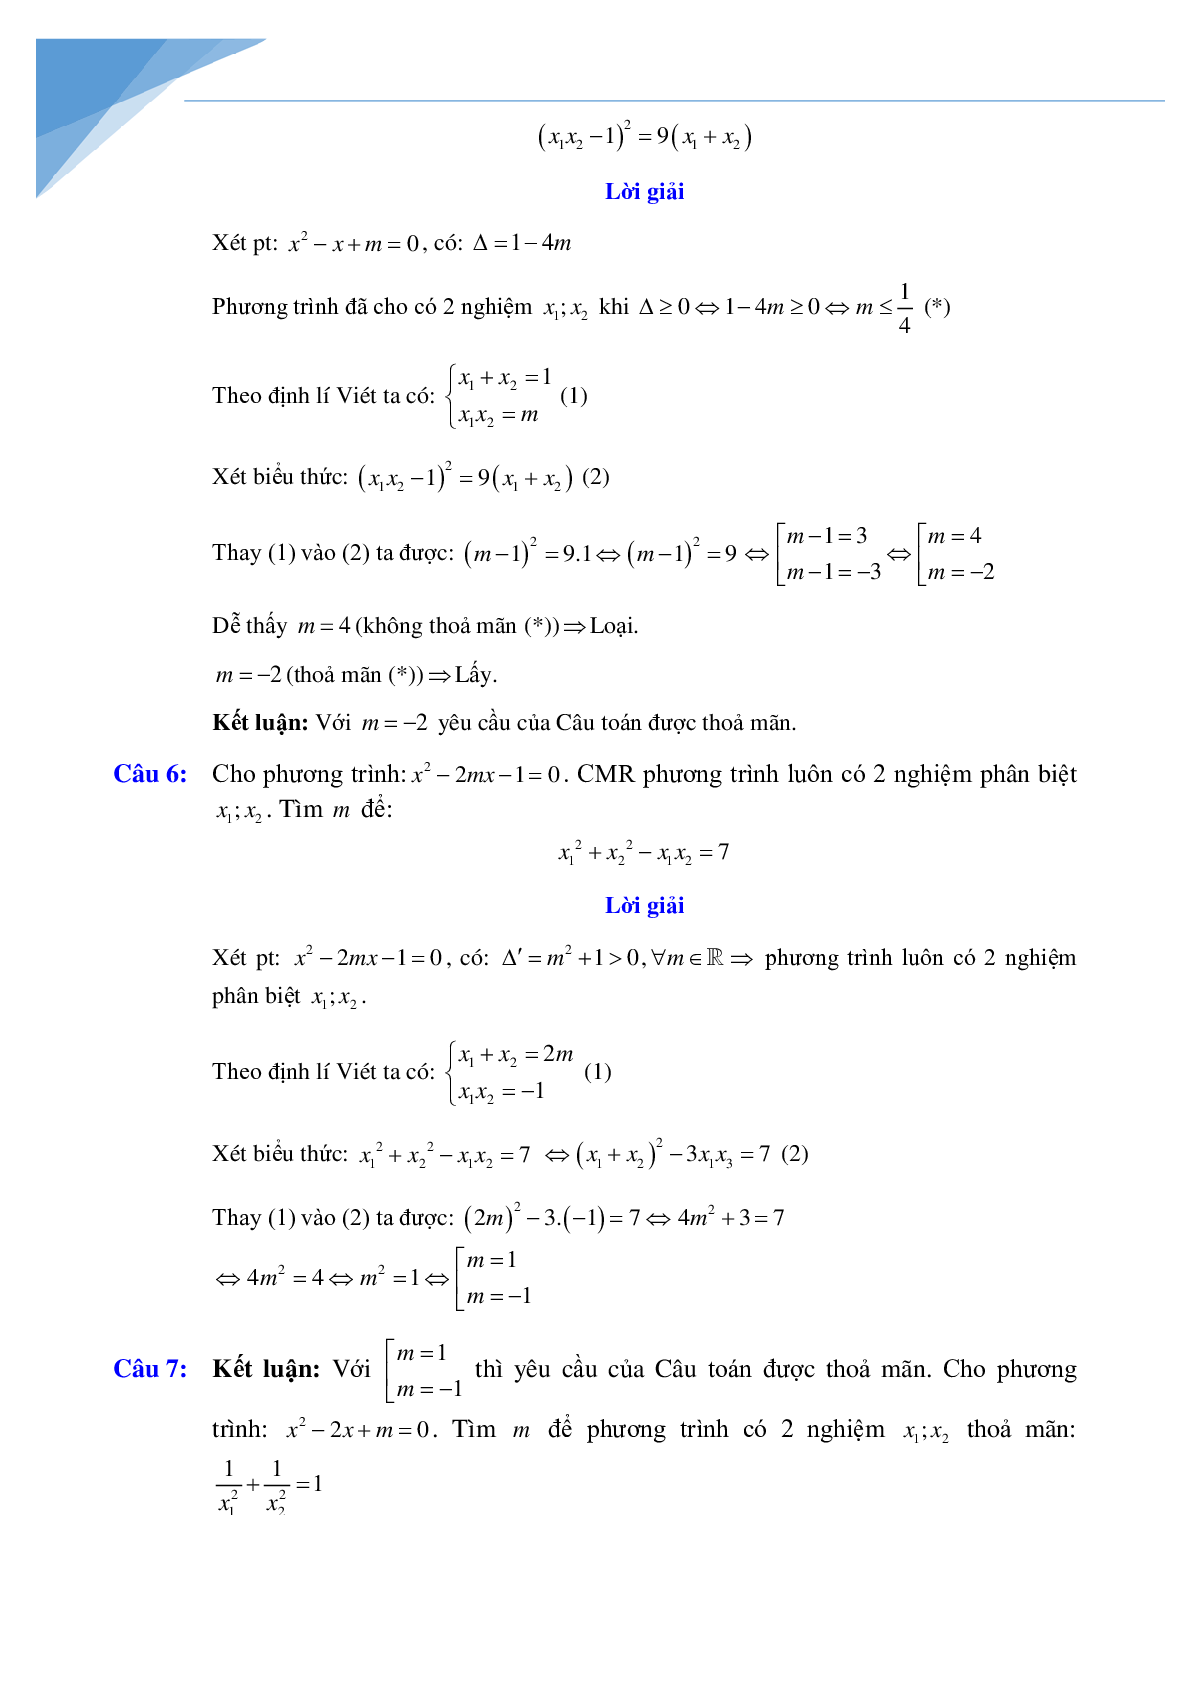 Chuyên đề vi-et luyện thi vào lớp 10 môn toán (trang 6)